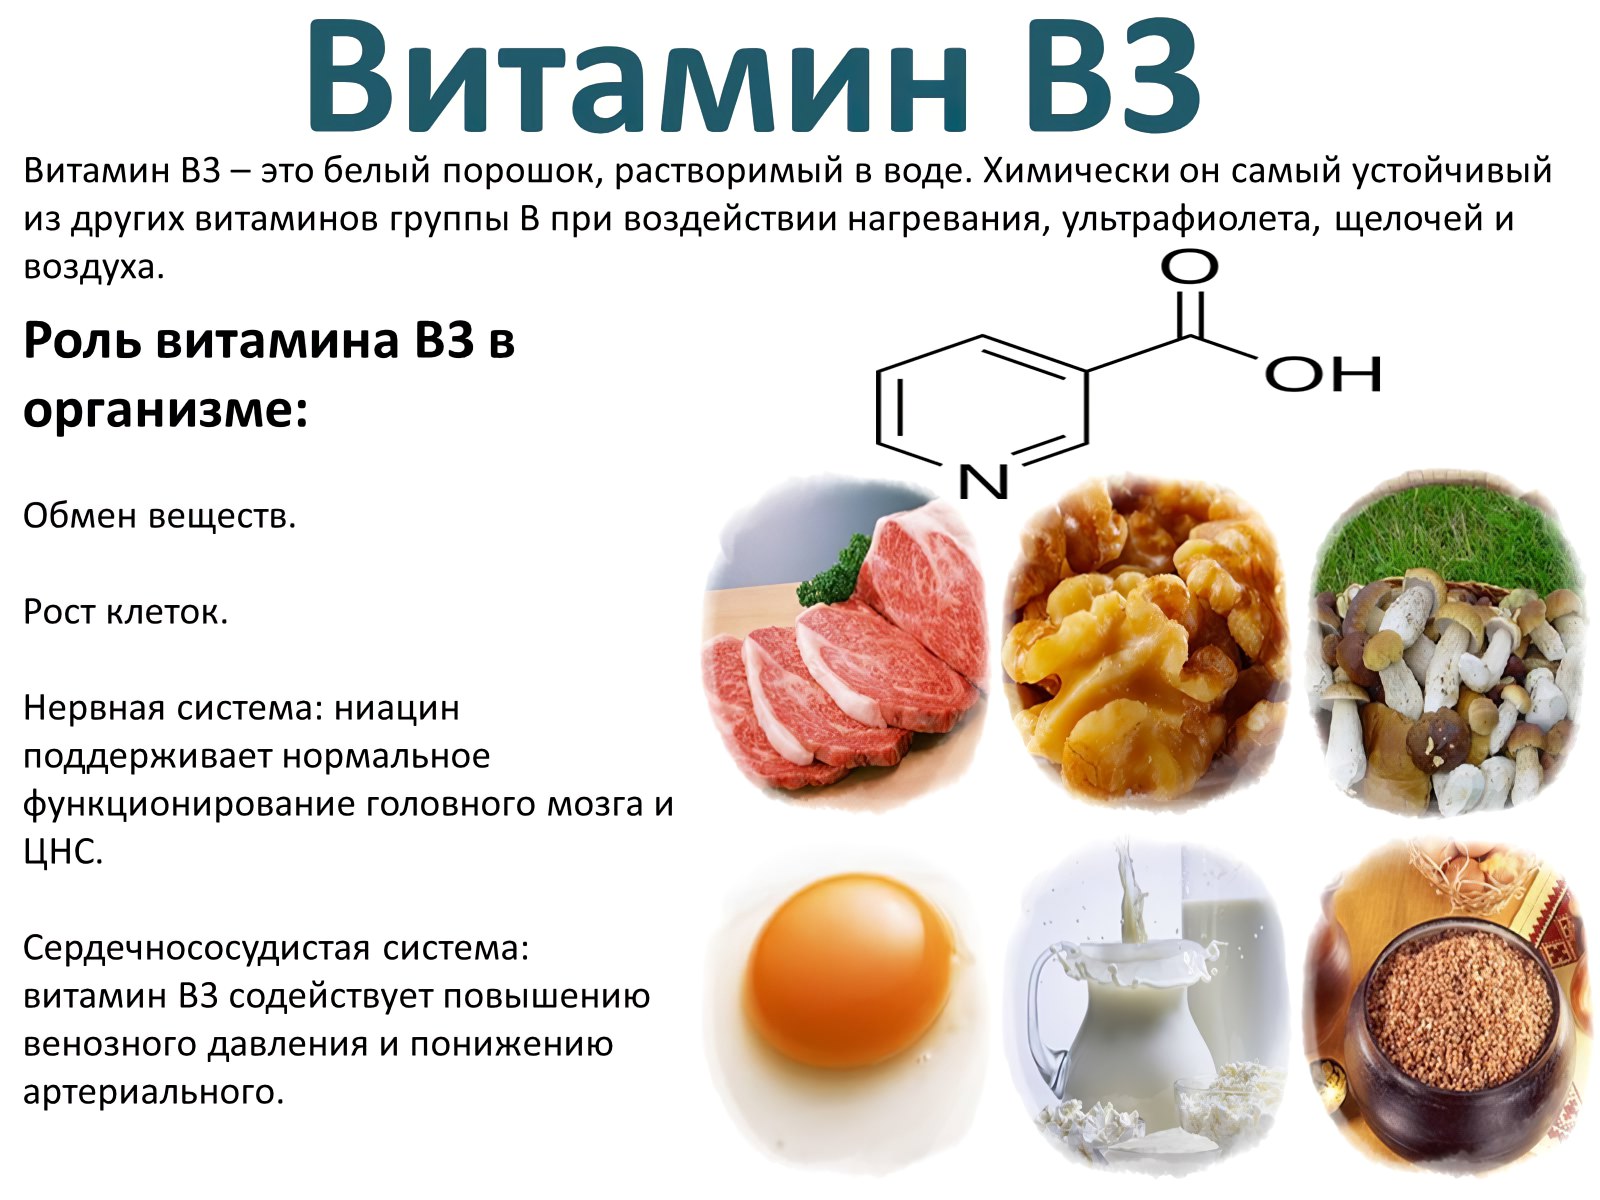 Витамин B3 Ниацин, никотиновая кислота, витамин PP - описание витамина, пищевые источники, польза и вред, суточная потребность, использование